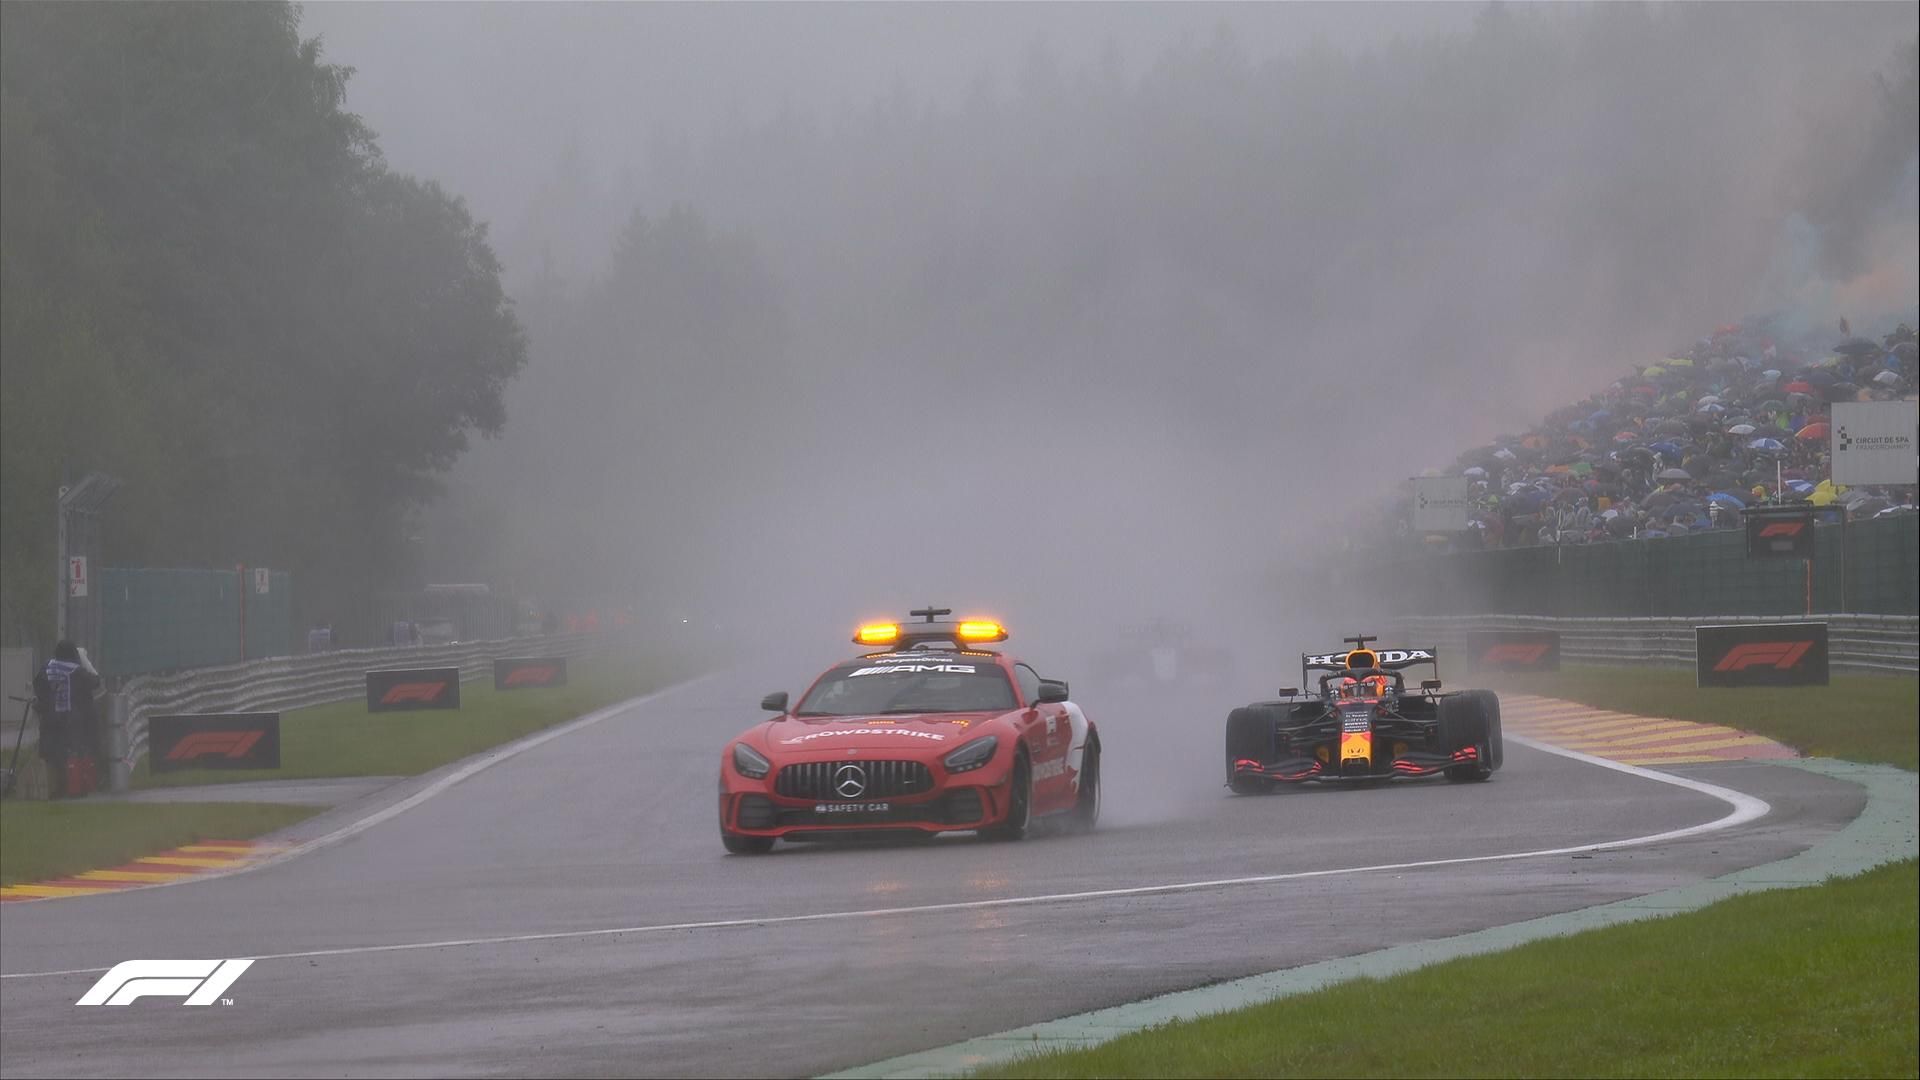 Гран-прі Бельгії стало найкоротшою гонкою Формули-1 – пілоти фінішували через три кола - Новини спорту - Спорт 24